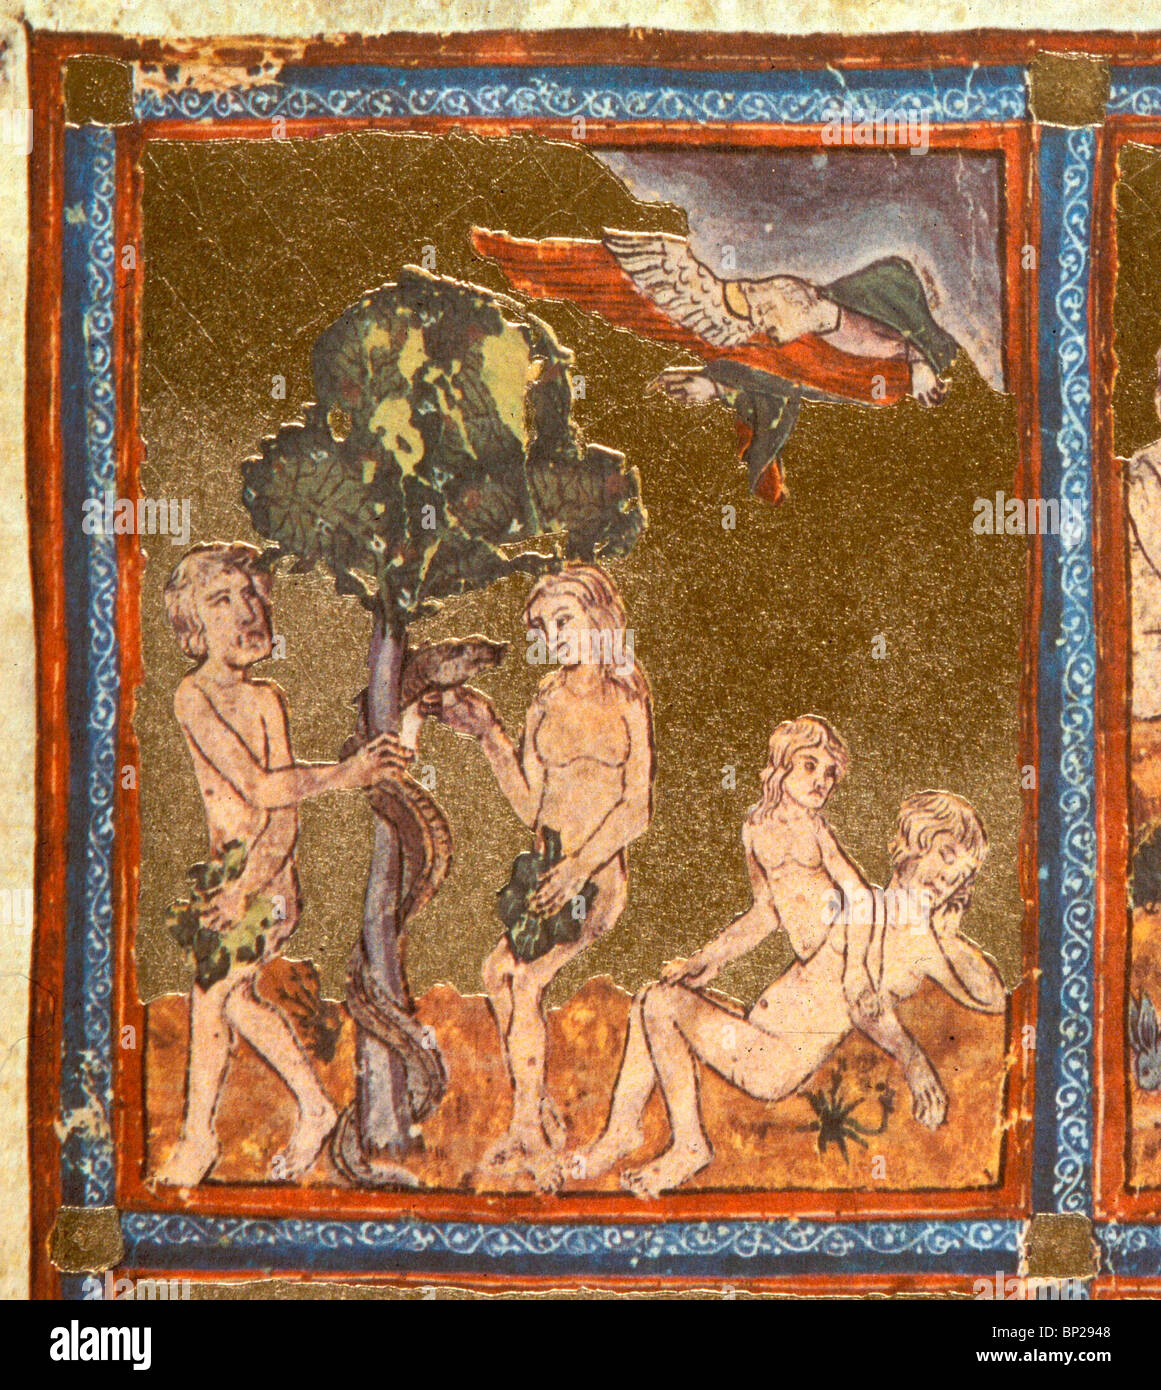 Lado izquierdo: Adam & Eve bajo el árbol de la sabiduría CON LA SERPIENTE RIGHR LATERAL: Vísperas creado fuera del cuerpo de Adán mientras él está Foto de stock